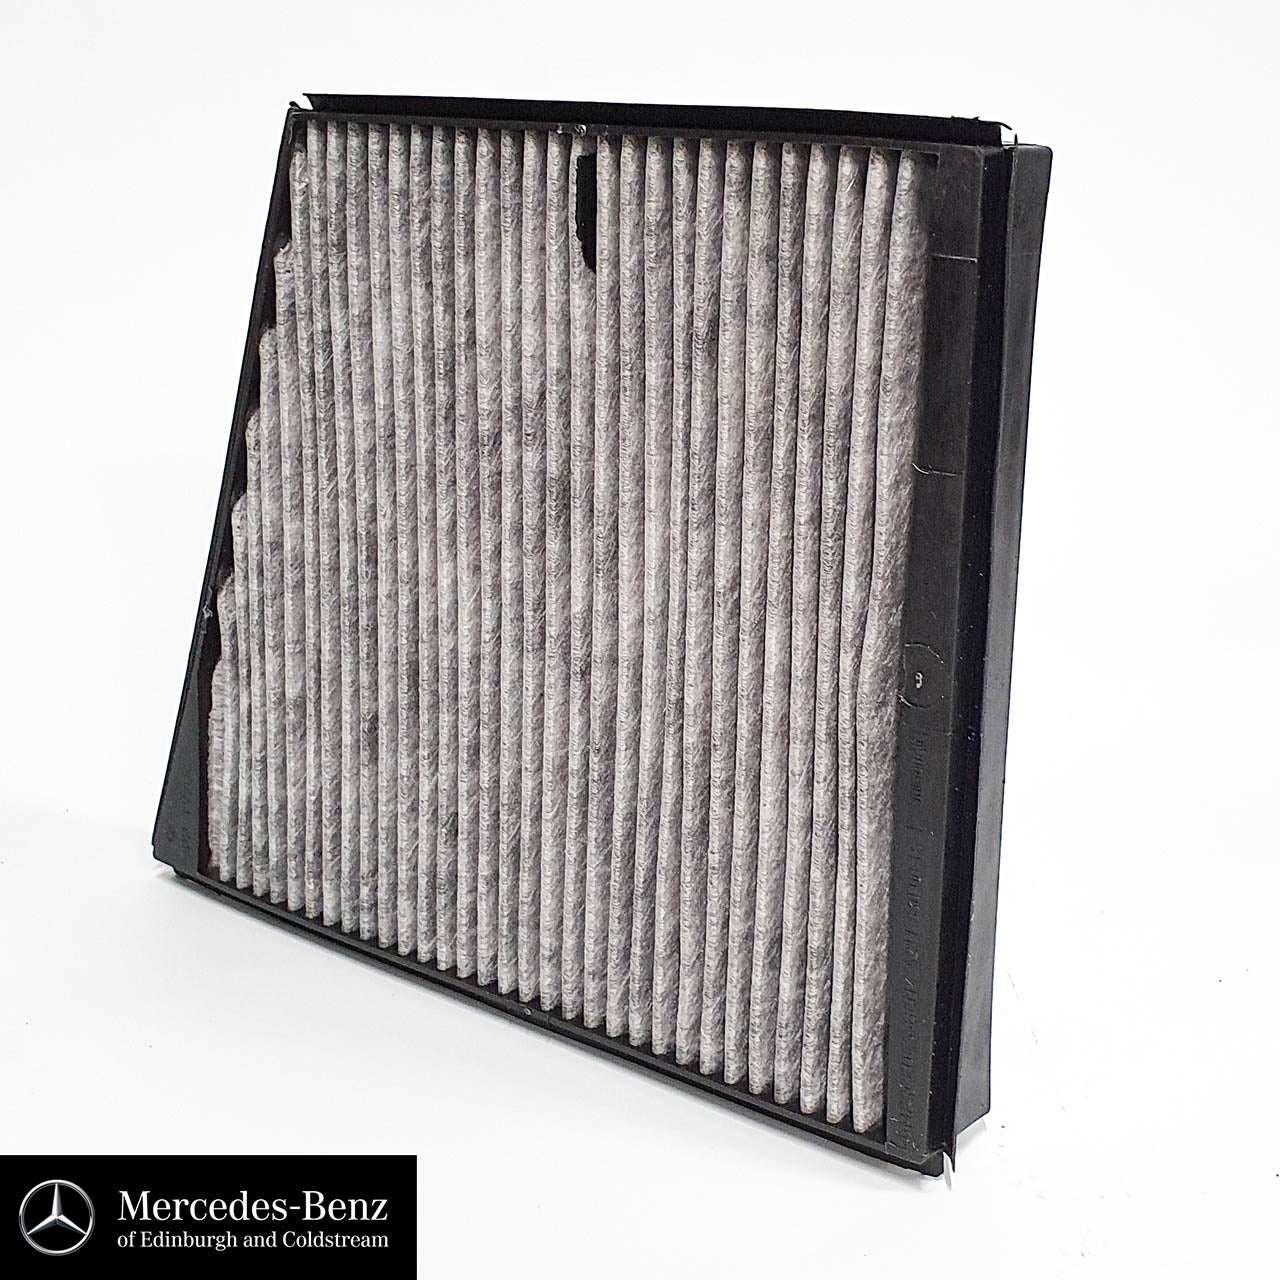 Genuine Mercedes-Benz Combination filter - Pollen (Cabin) Filter E Class, CLS